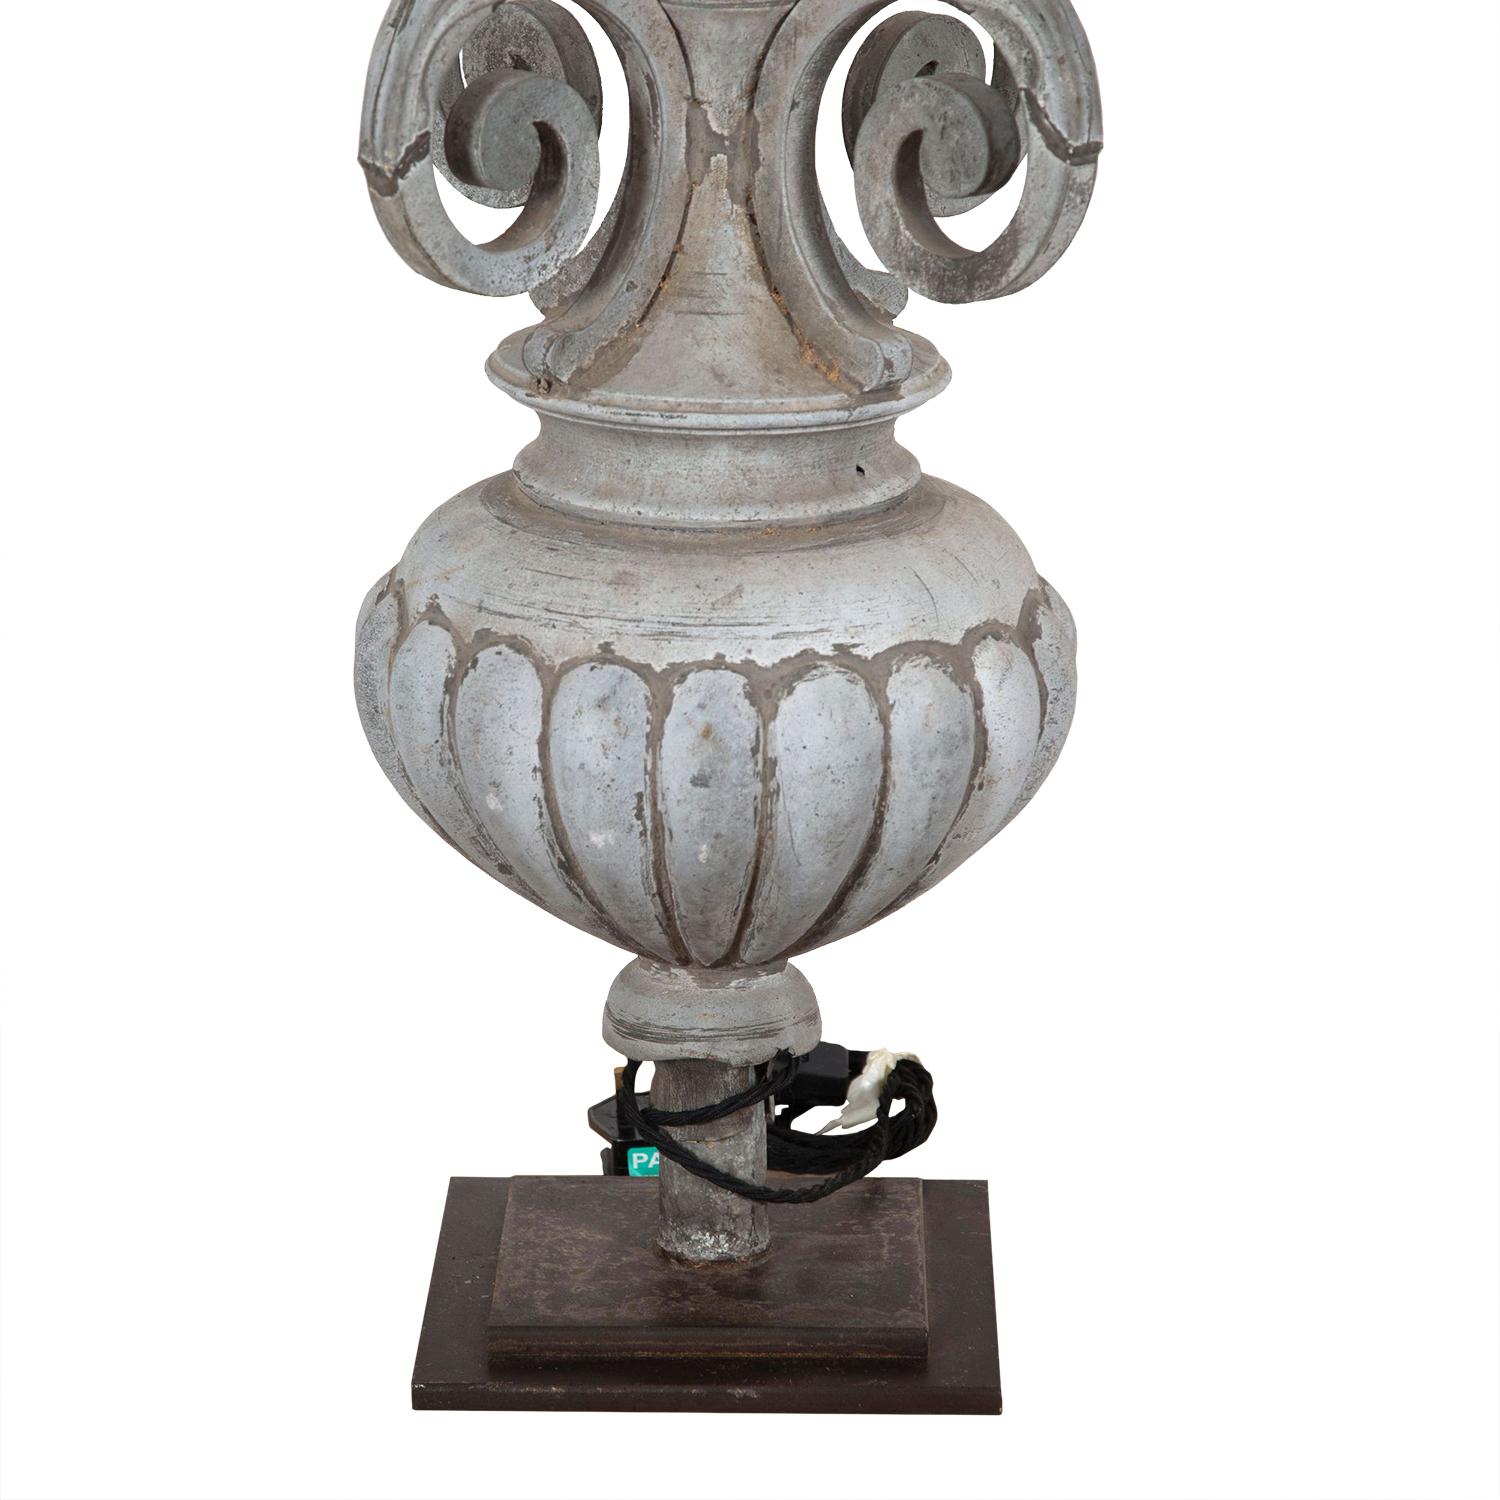 fragment de zinc du XIXe siècle transformé en lampe décorative. Cette pièce a été recâblée et testée selon les normes britanniques.